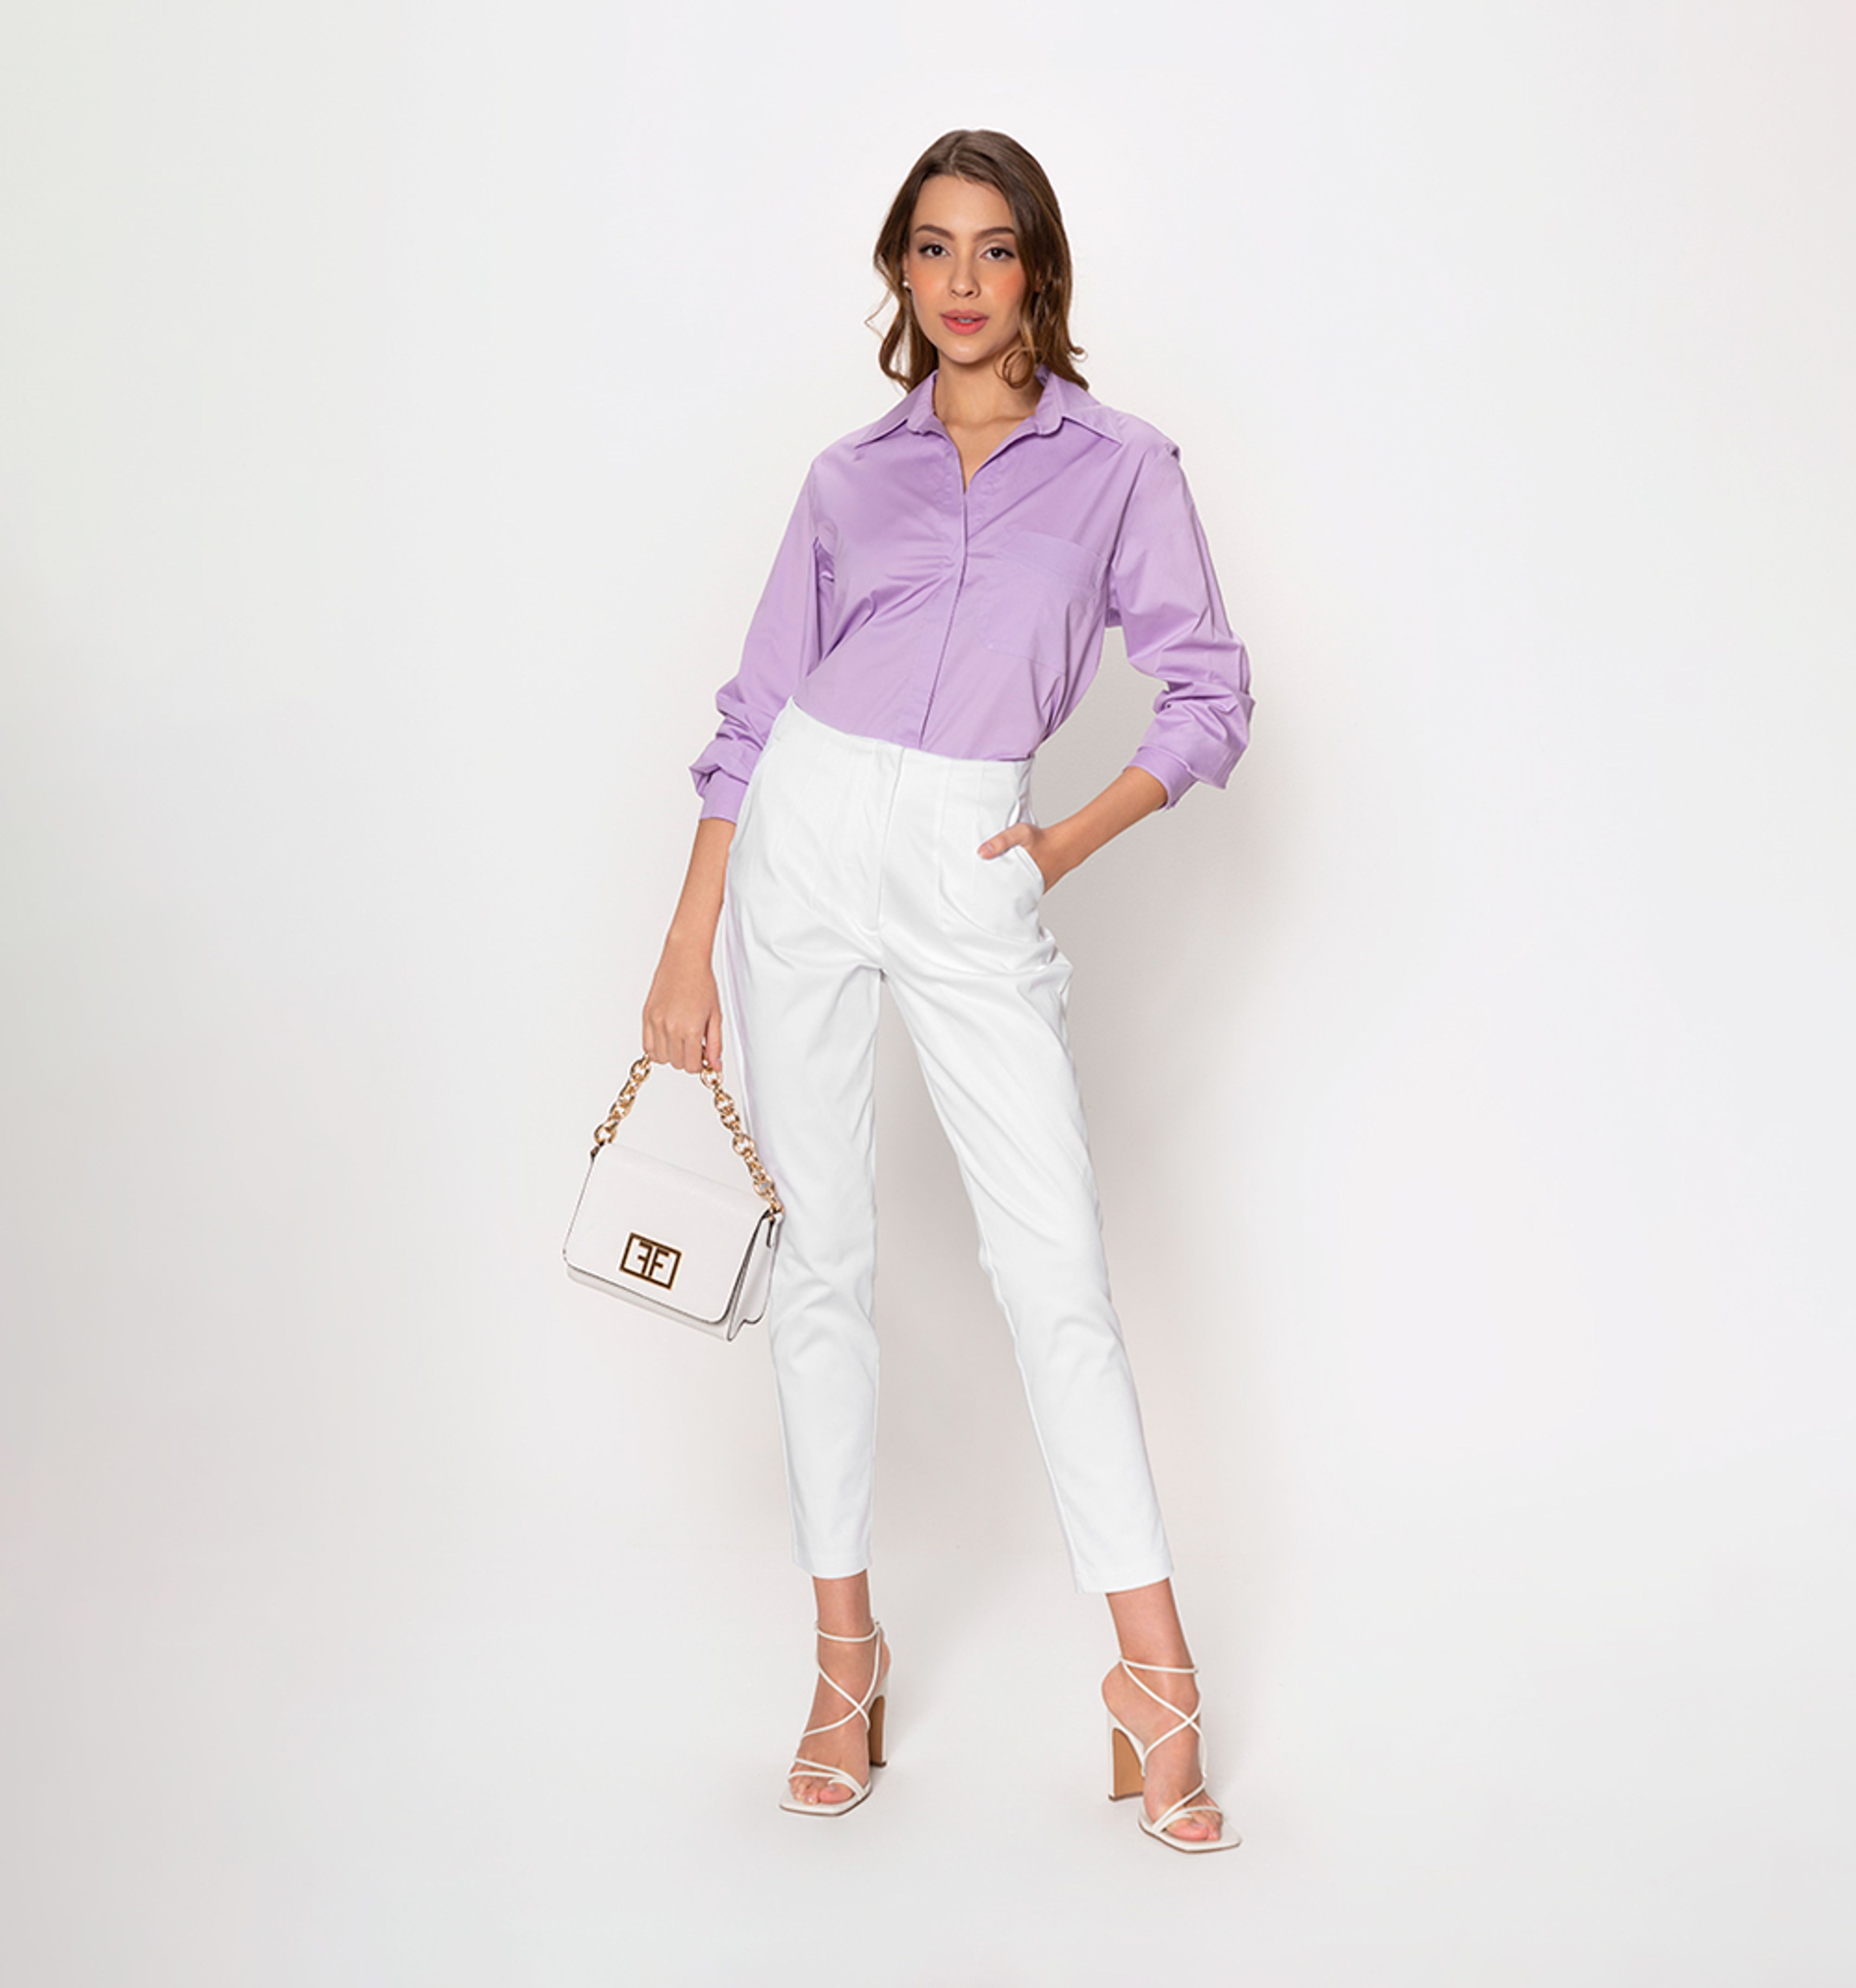 Boca Rosa Pantalones formales mujer - Compra online a los mejores precios